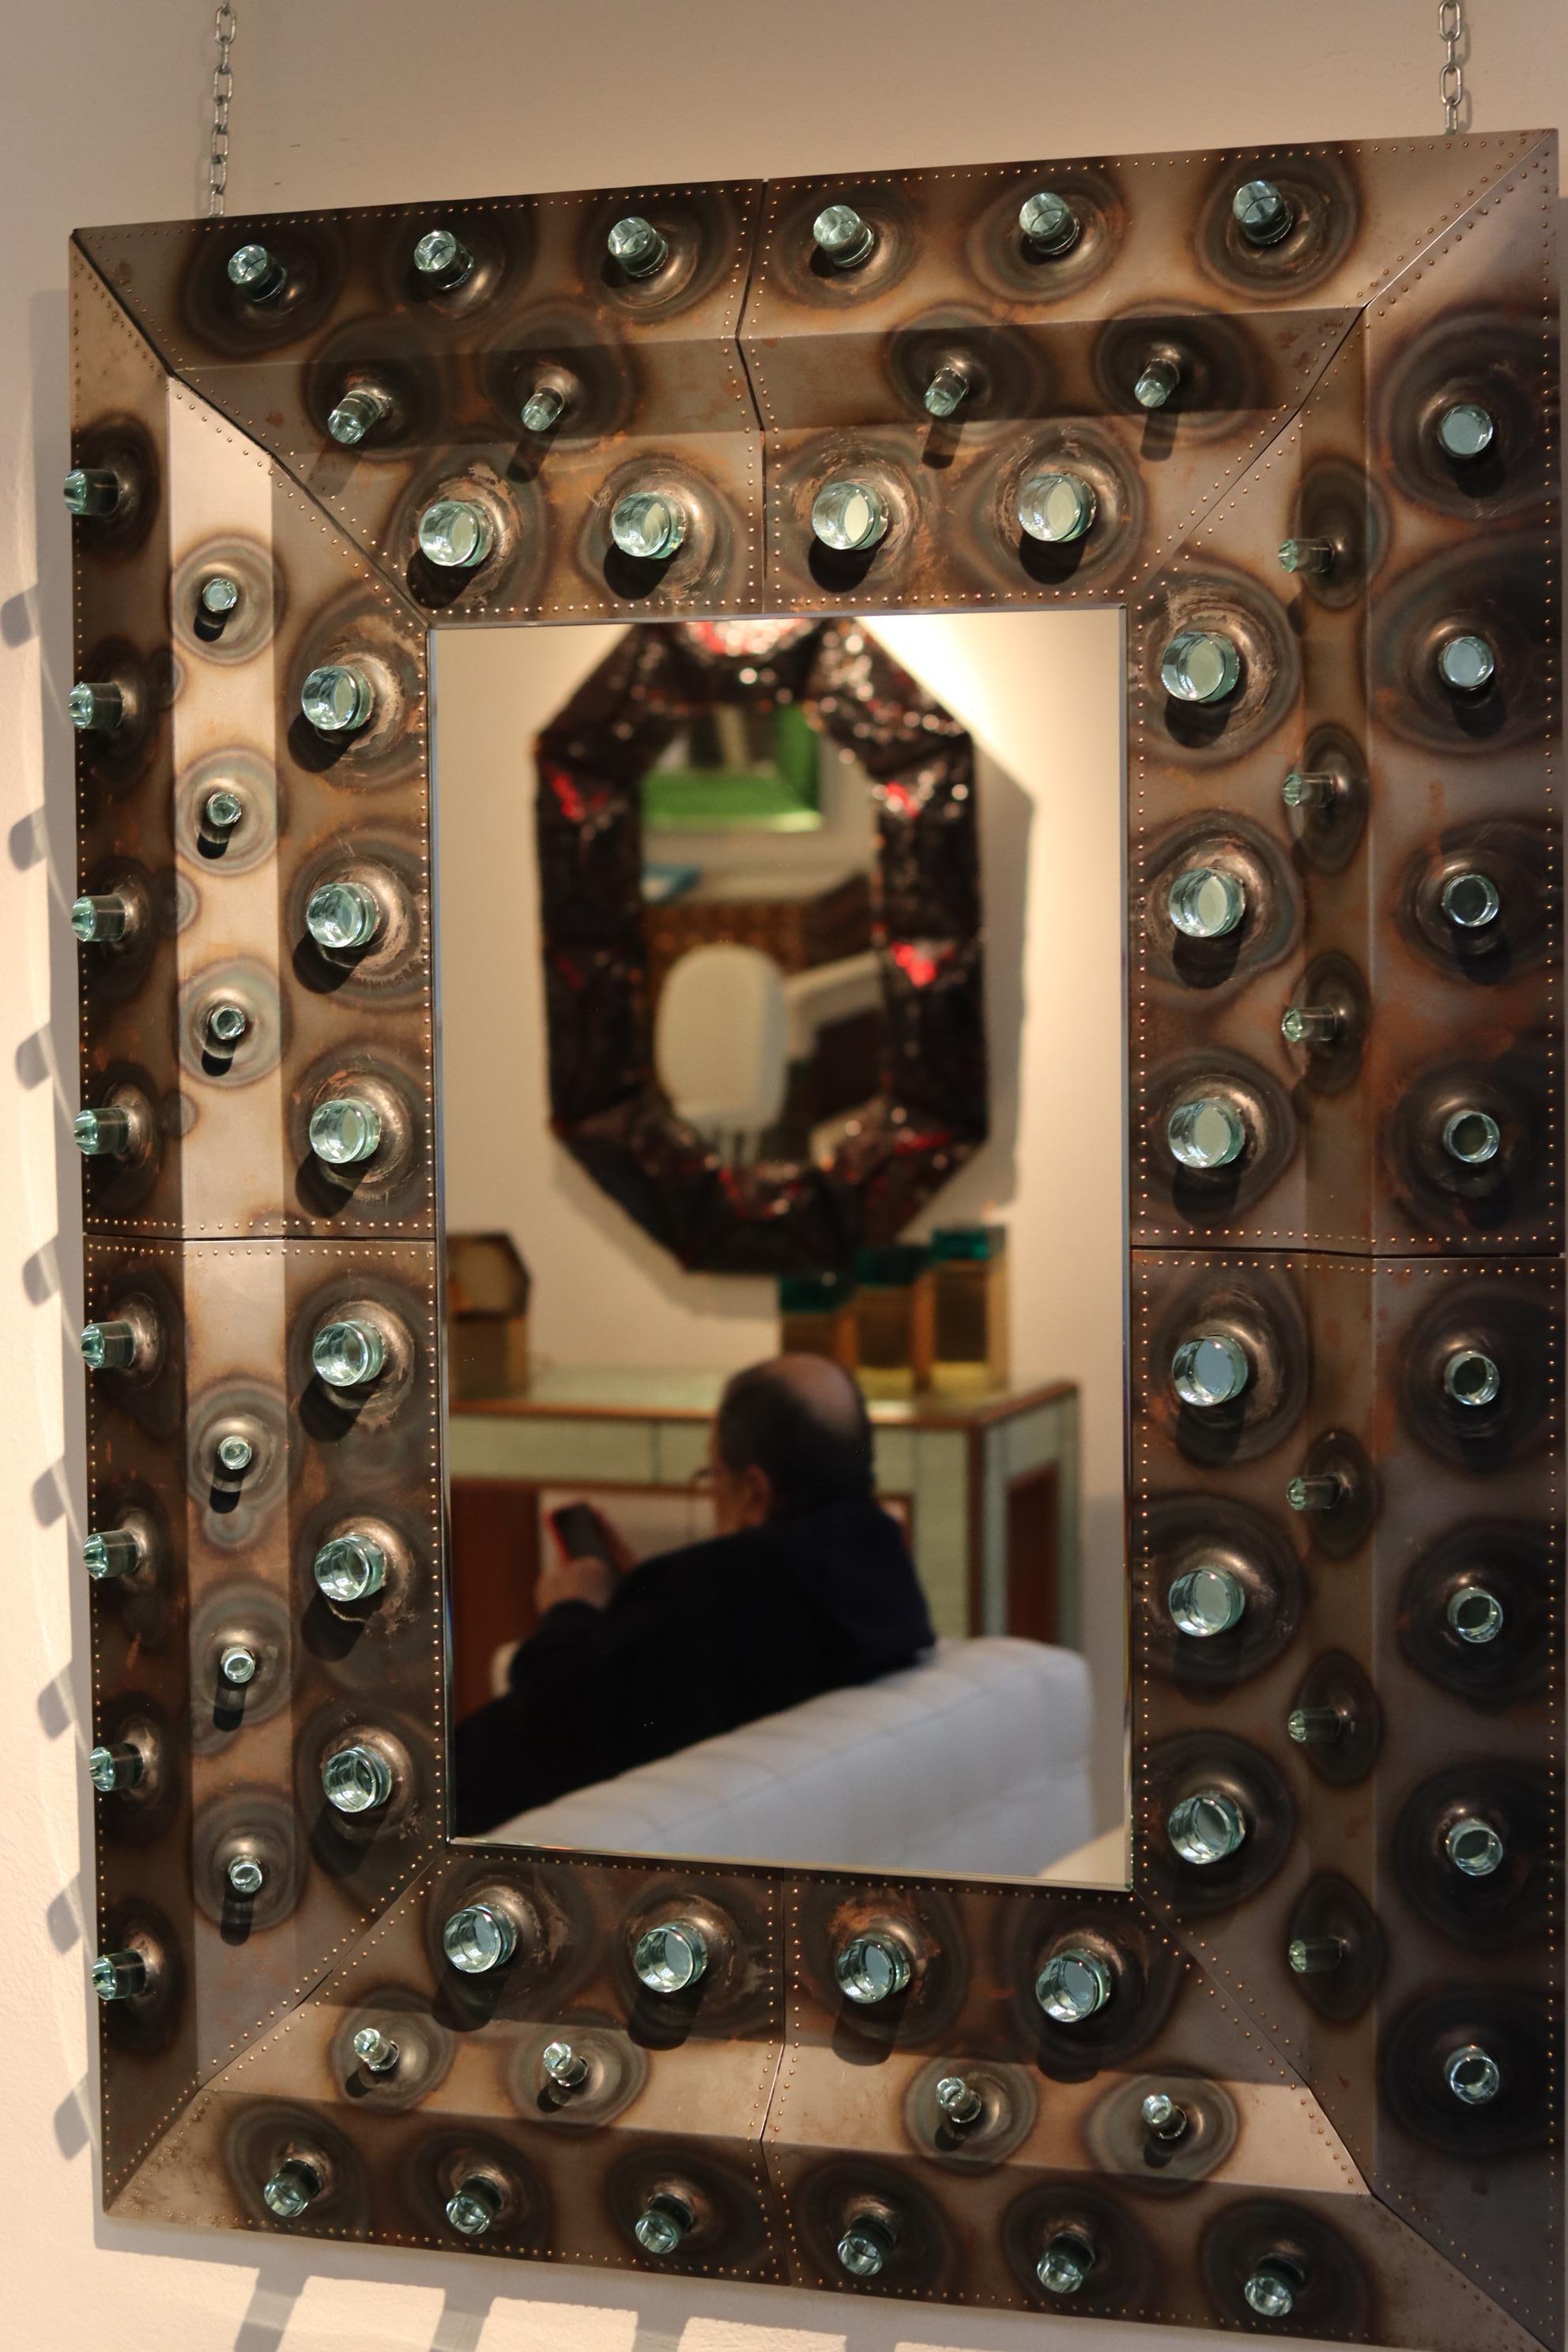 Spechio NEMO
exemple unique de grand miroir mural de style brutaliste, entièrement fabriqué à la main en Italie.
Cette œuvre brutaliste de Roberto Giulio Rida, réalisée en collaboration avec son fils Morgan, est sans aucun doute atypique d'un point